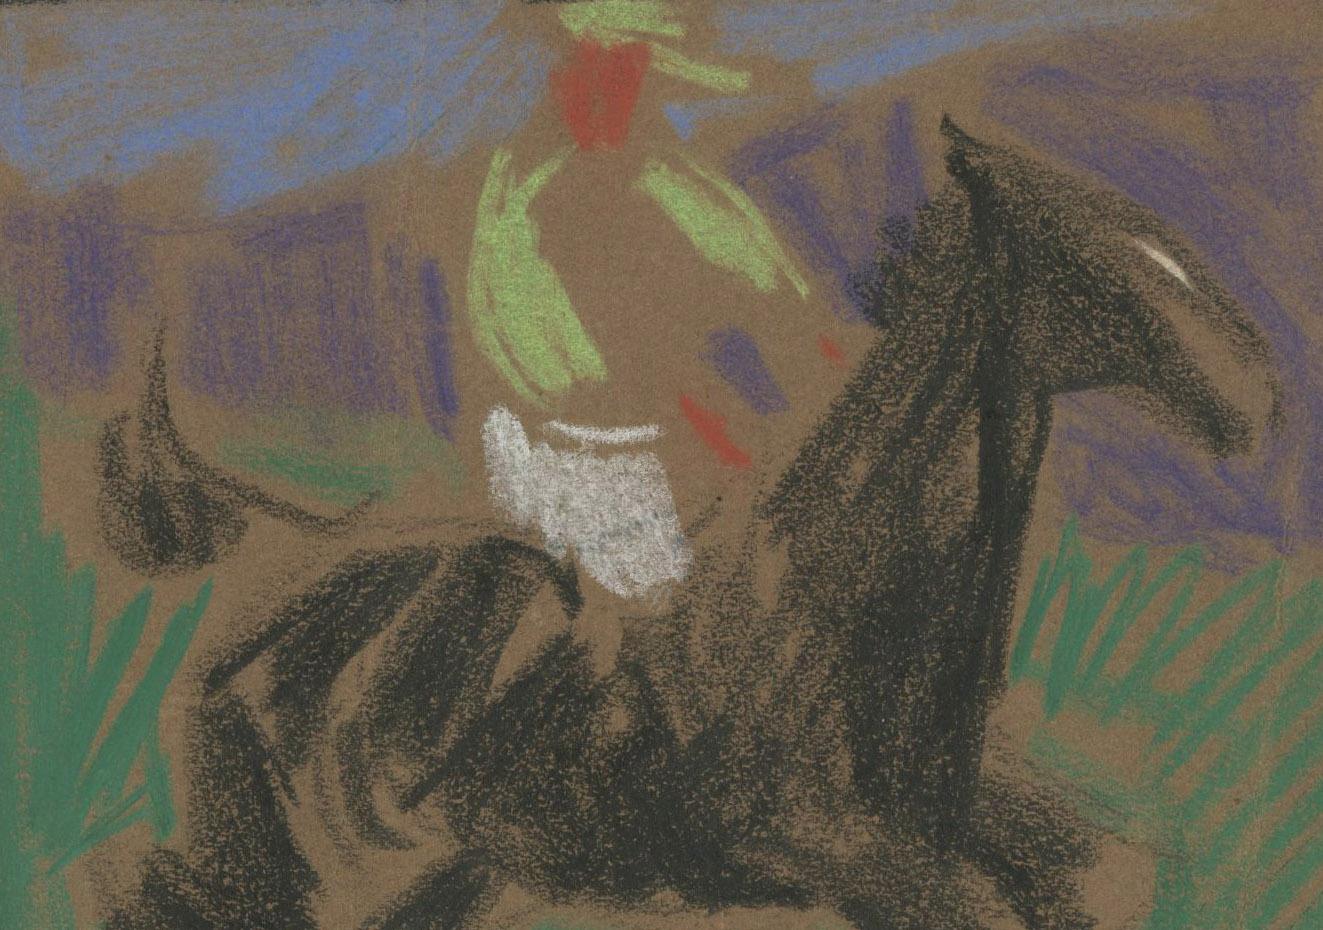 unbetitelt (Polospieler zu Pferd) (Amerikanischer Impressionismus), Art, von Henry George Keller